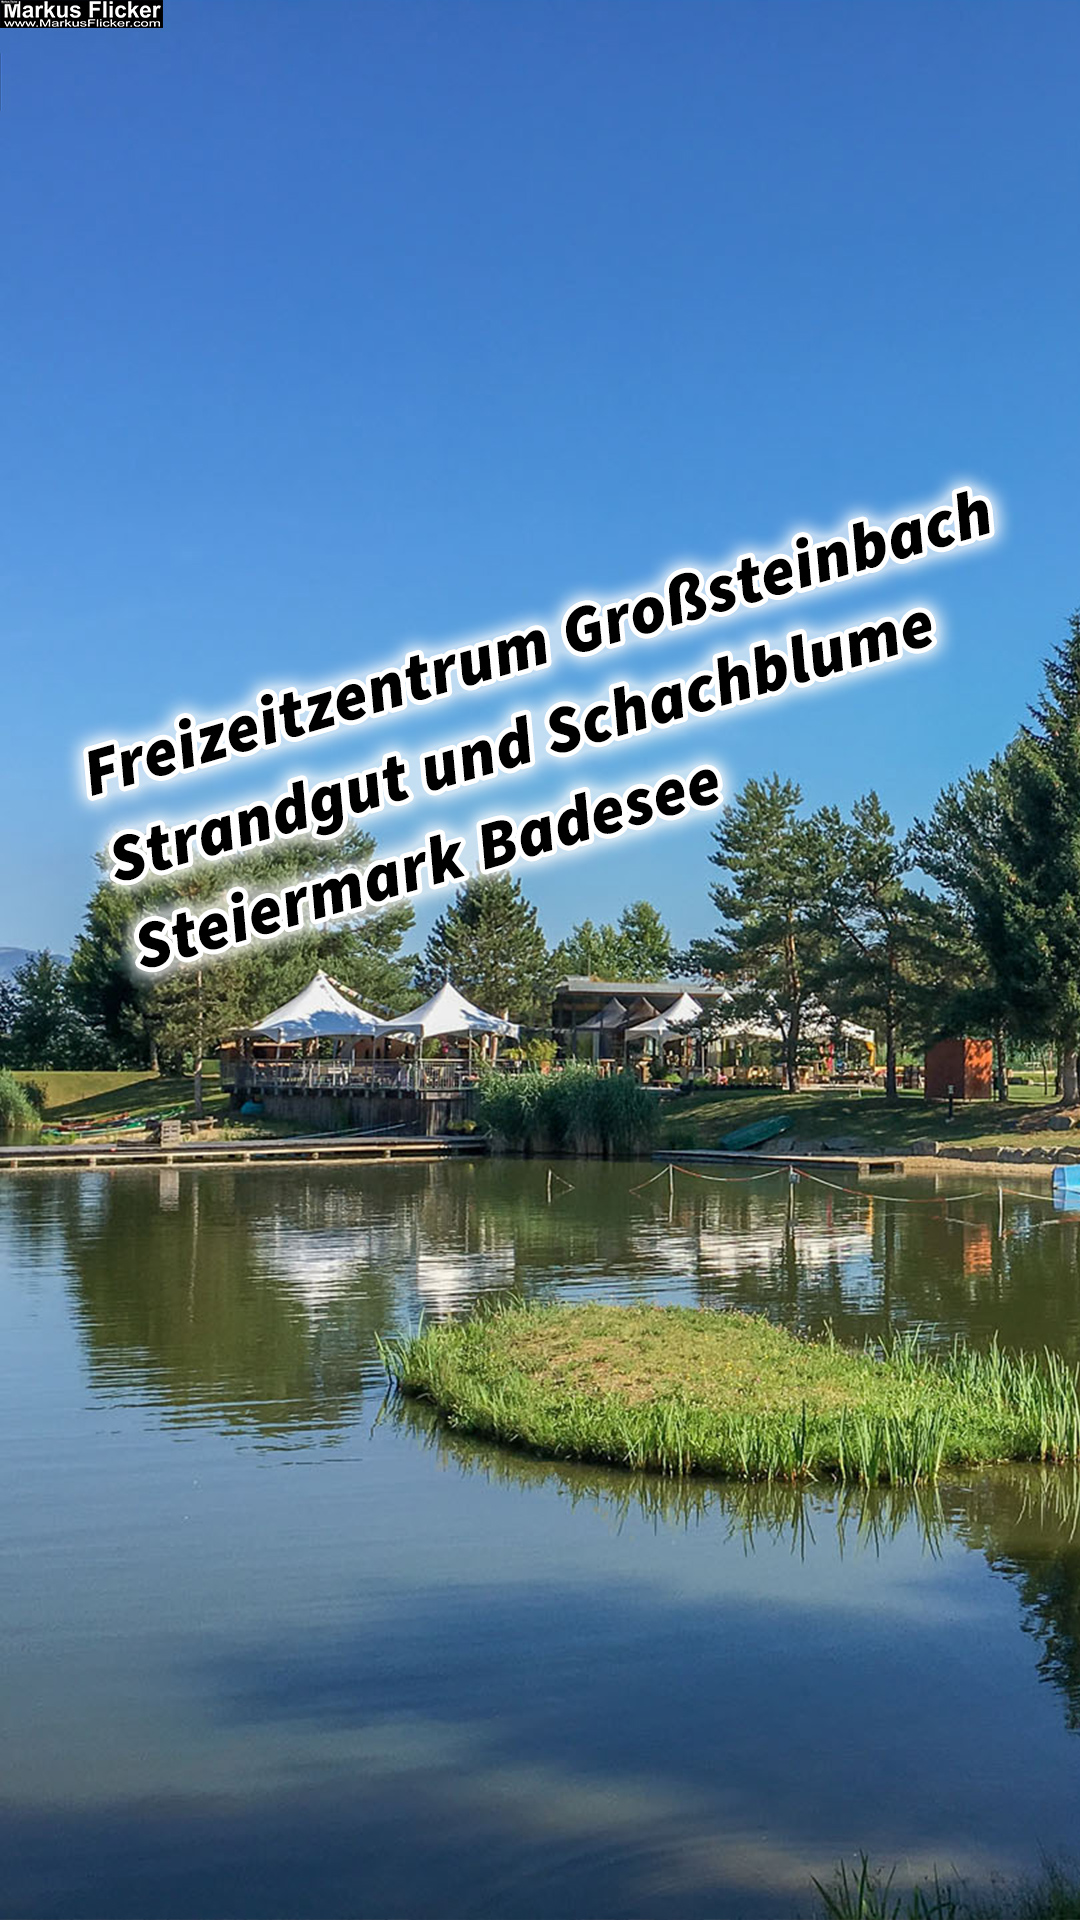 Freizeitzentrum Großsteinbach, Strandgut und Schachblume Steiermark Badesee